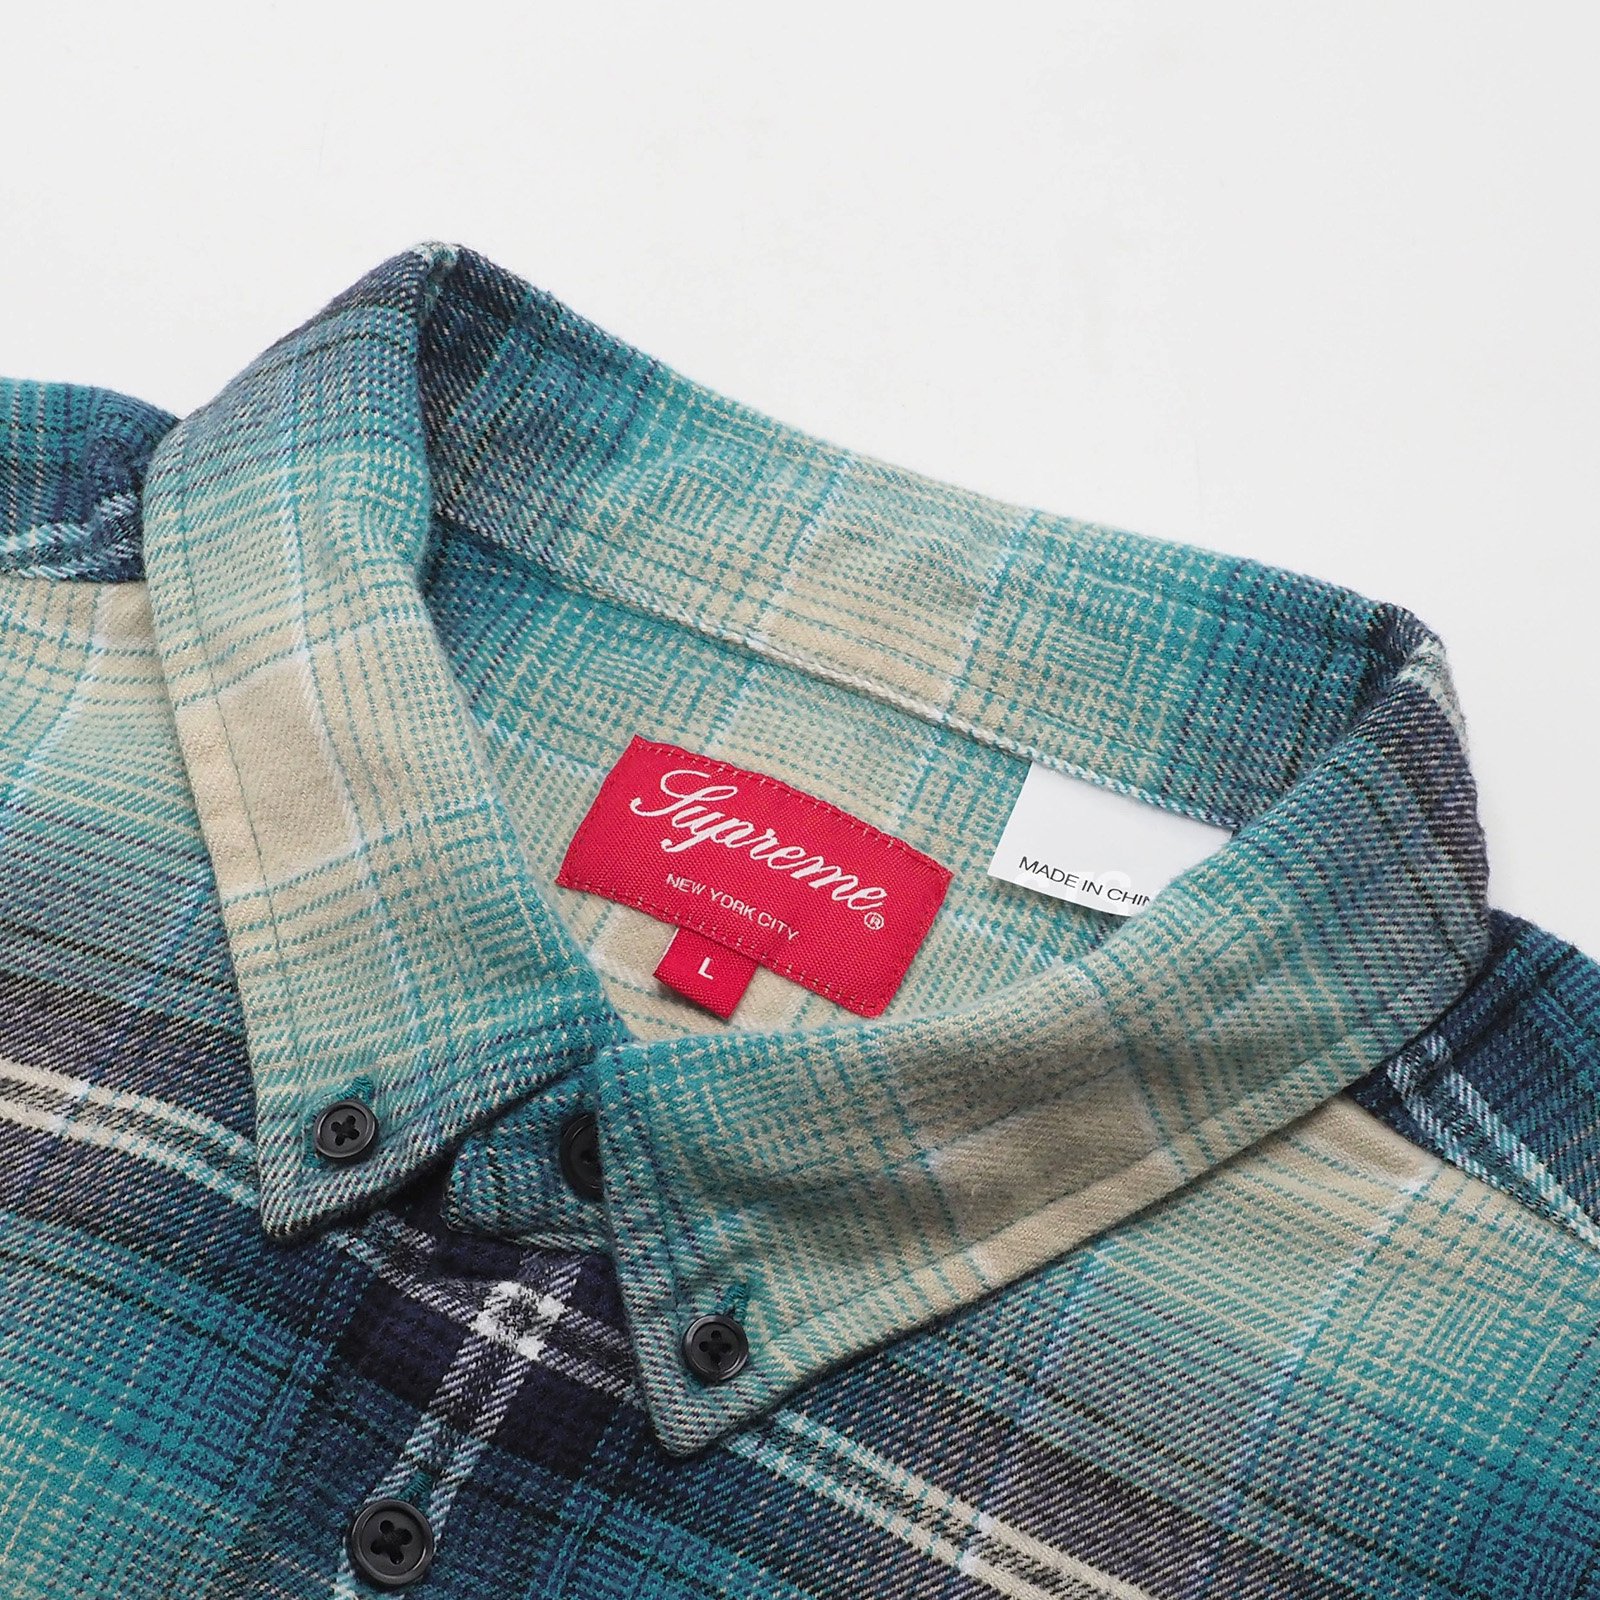 Supreme - Shadow Plaid Flannel Shirt - UG.SHAFT